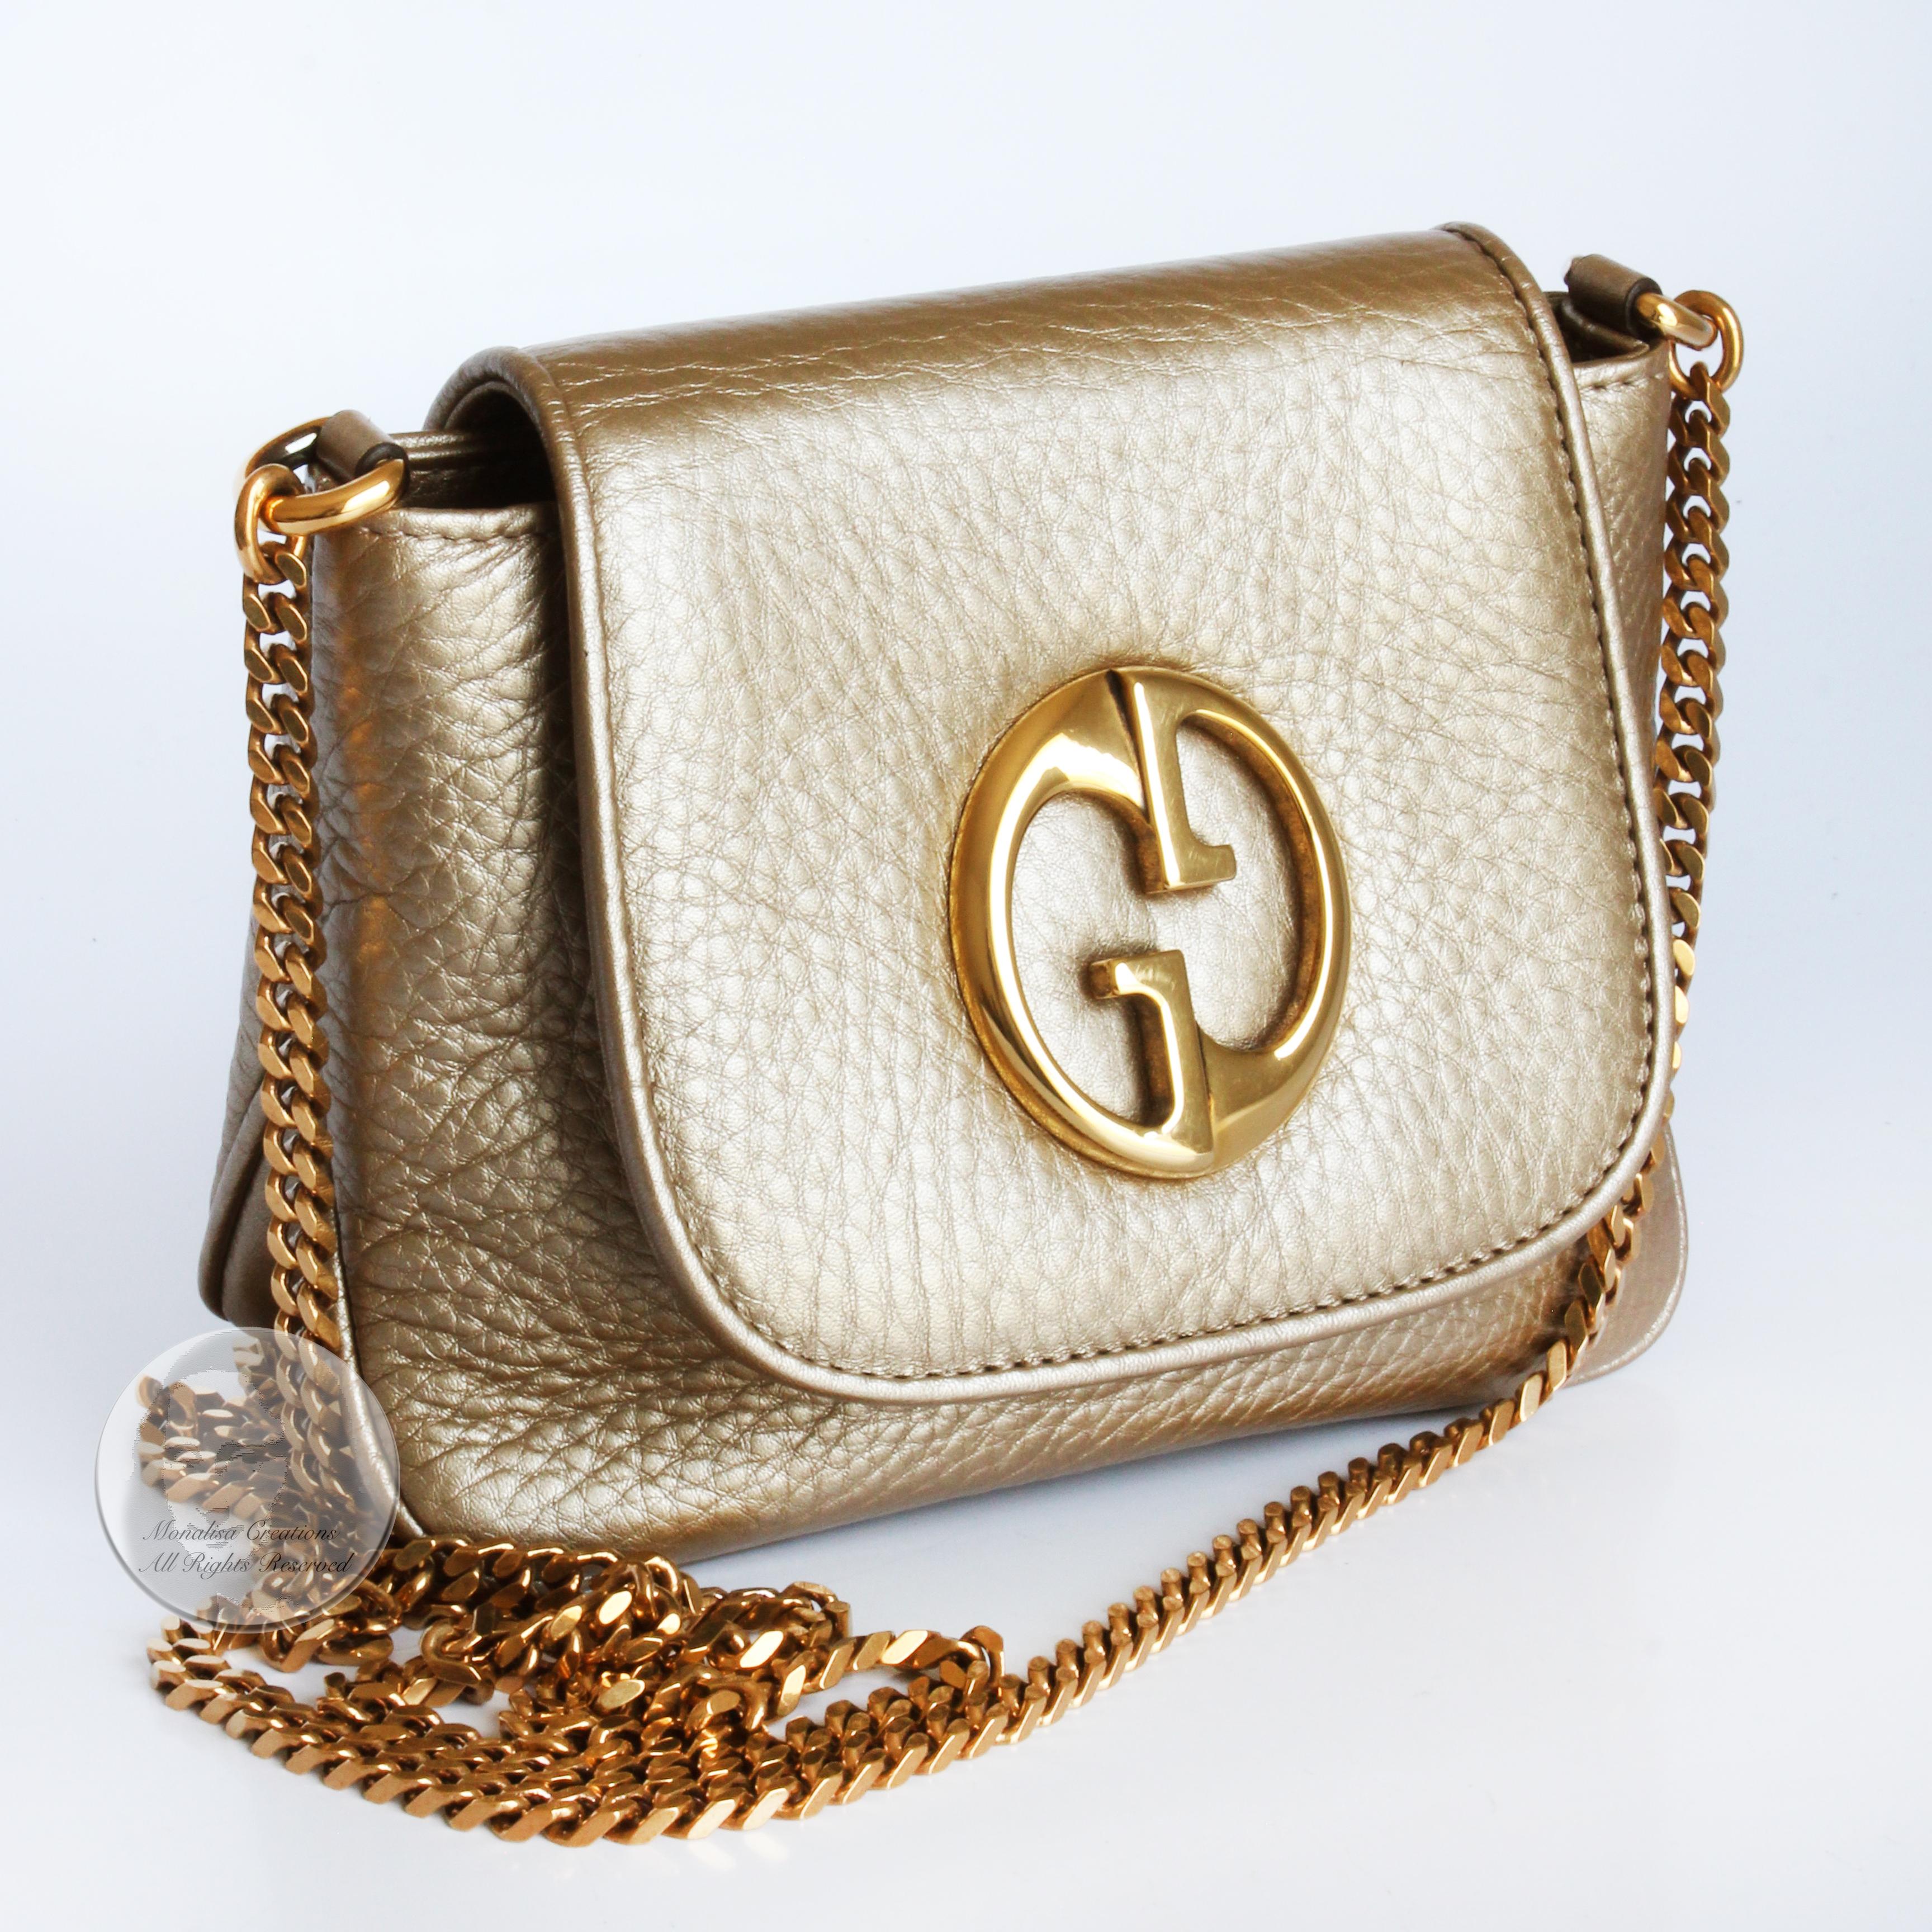 Women's or Men's Gucci 1973 Shoulder Bag Gold Pebbled Leather Evening Bag + Dustbag & COA NWOT